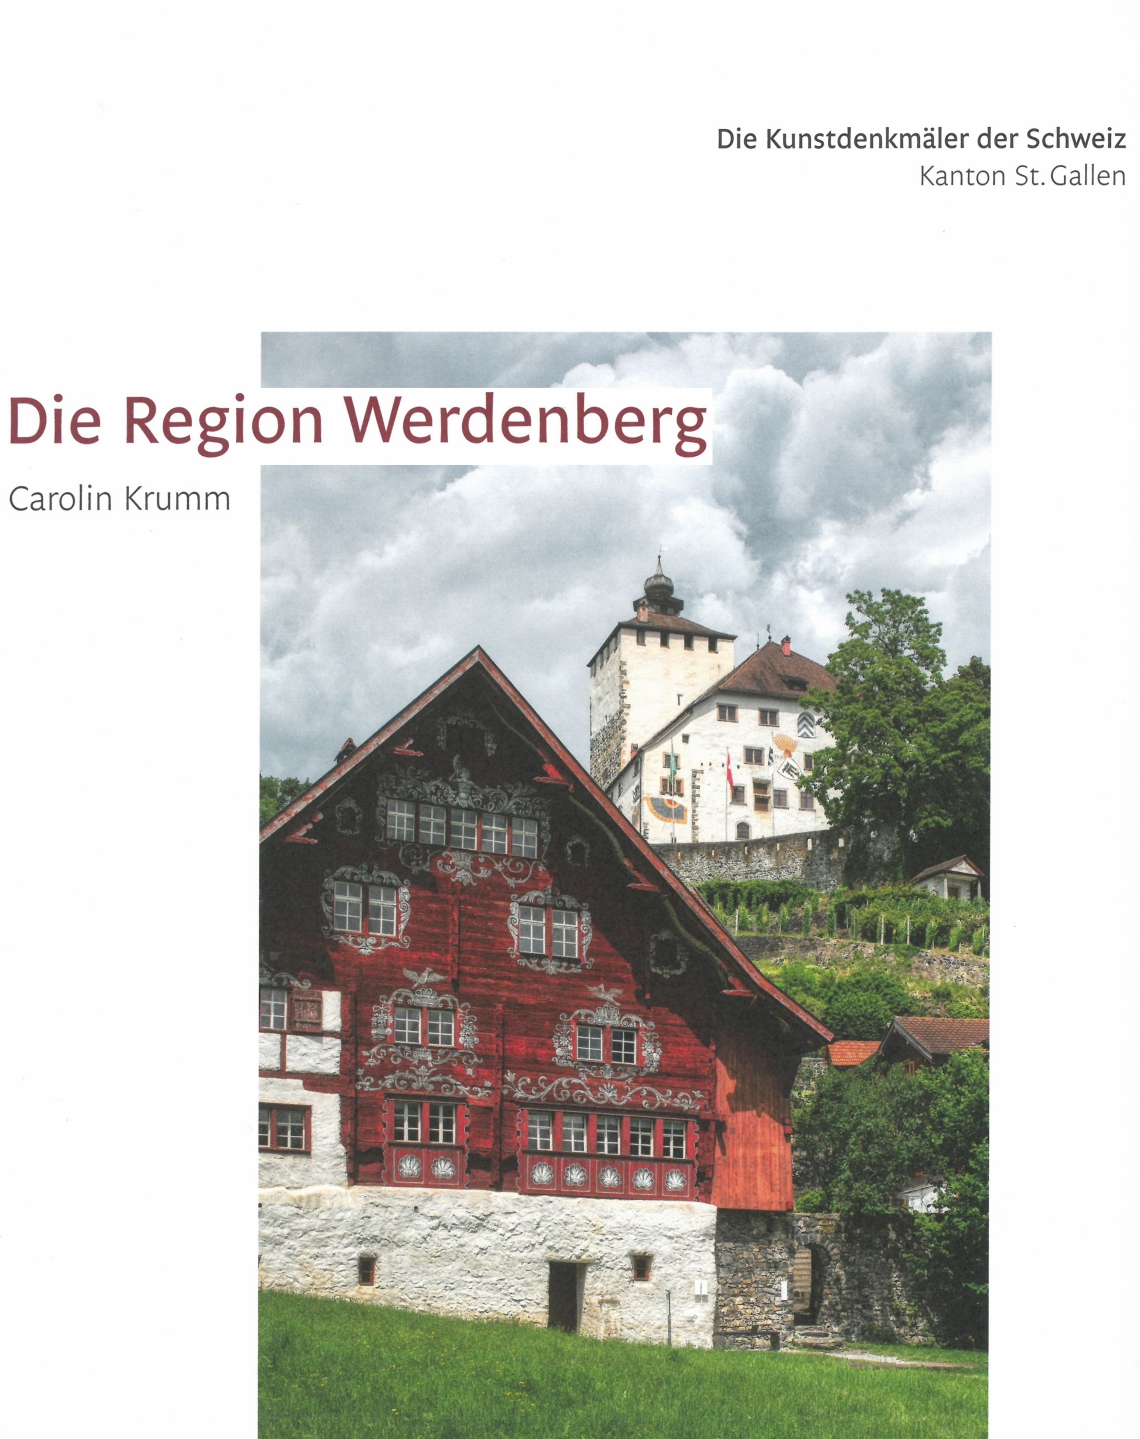 Die Kunstdenkmäler des Kantons St.Gallen VI. Die Region Werdenberg